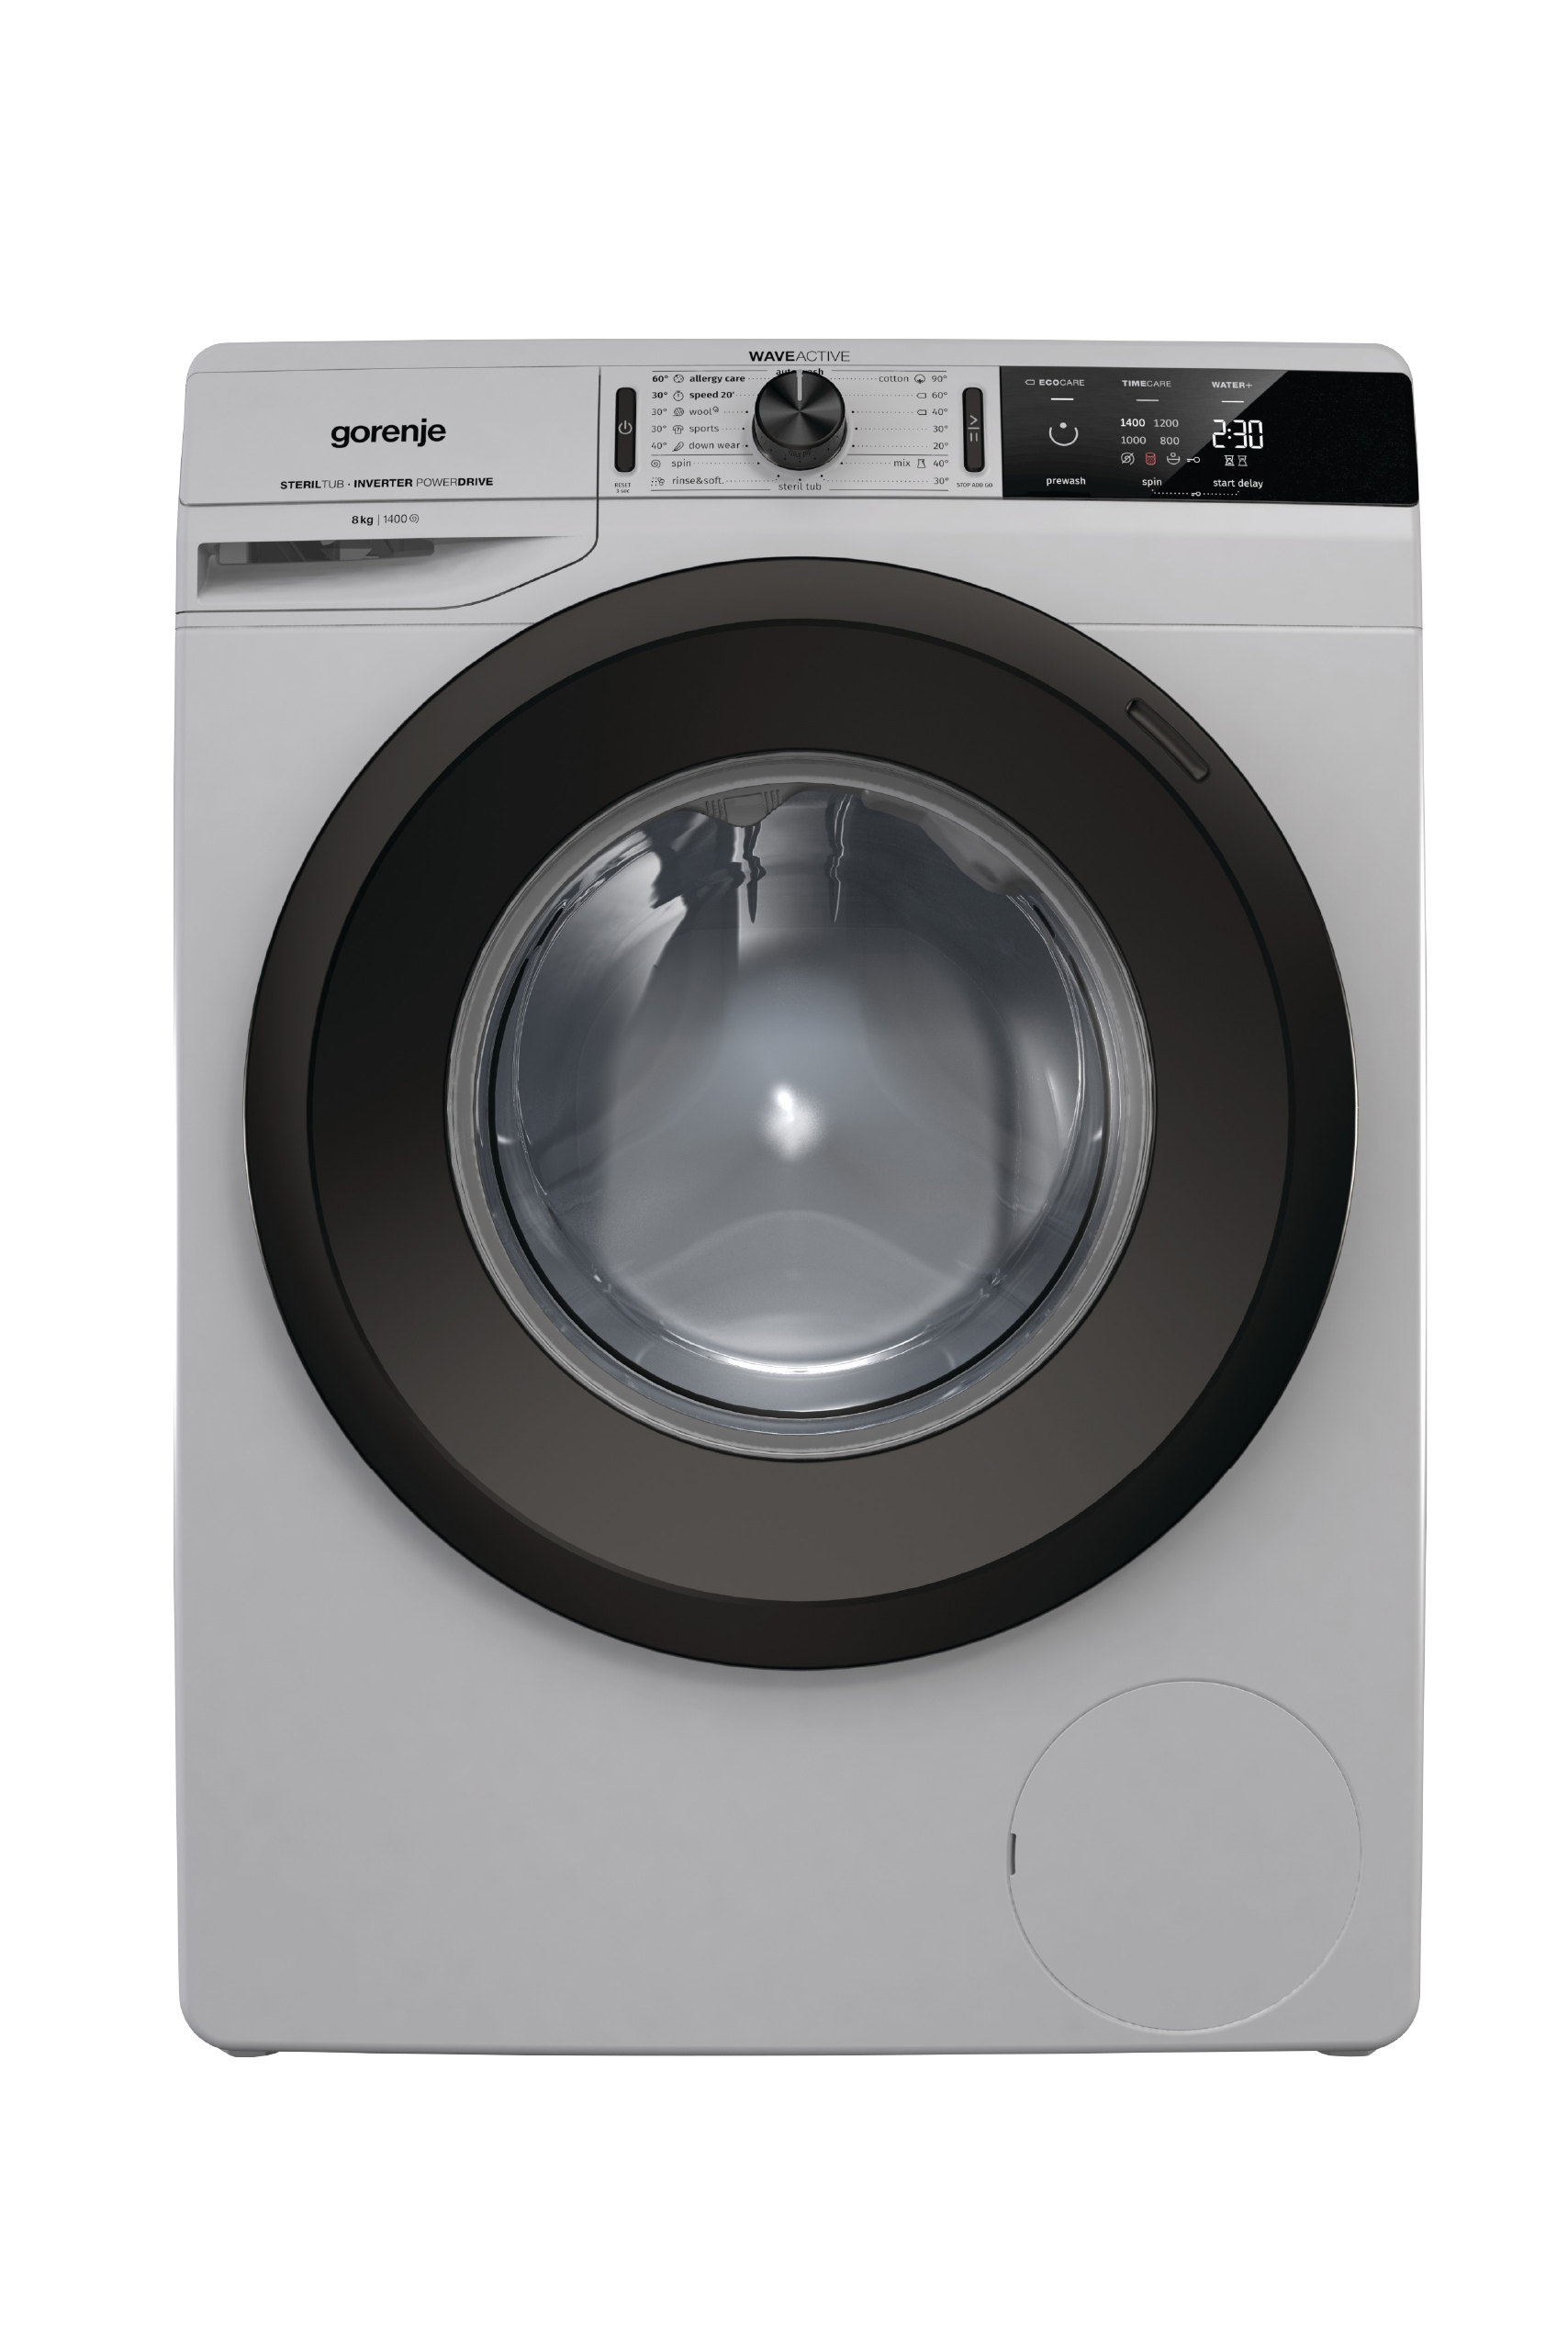 Gorenje washing machine 8 kg